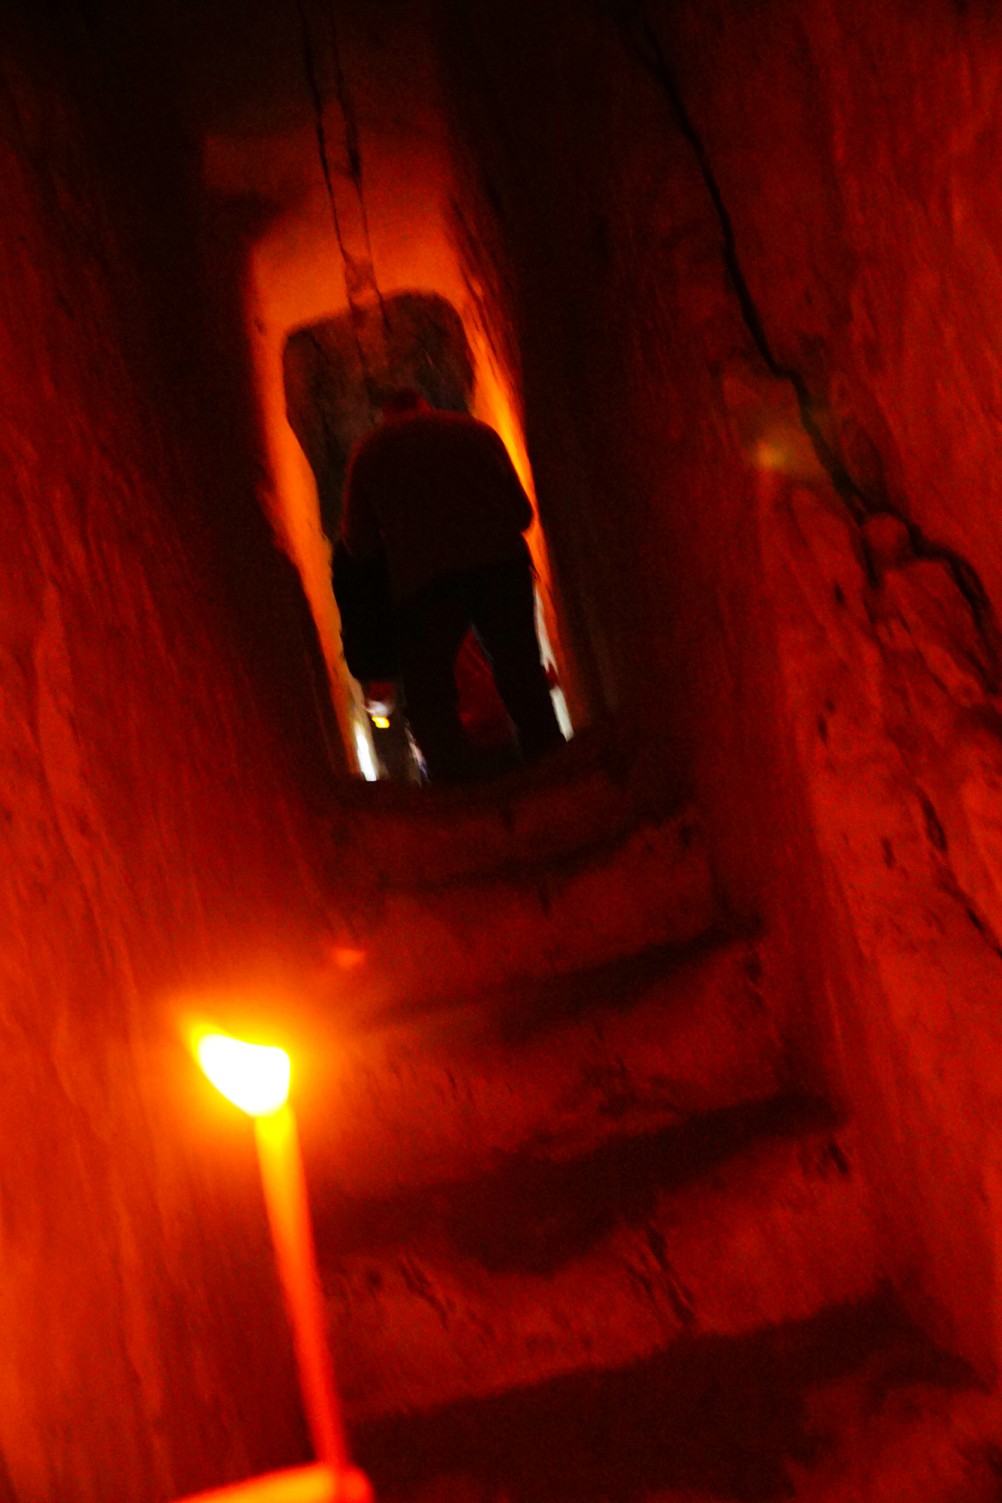 Пещерные храмы Дивногорья